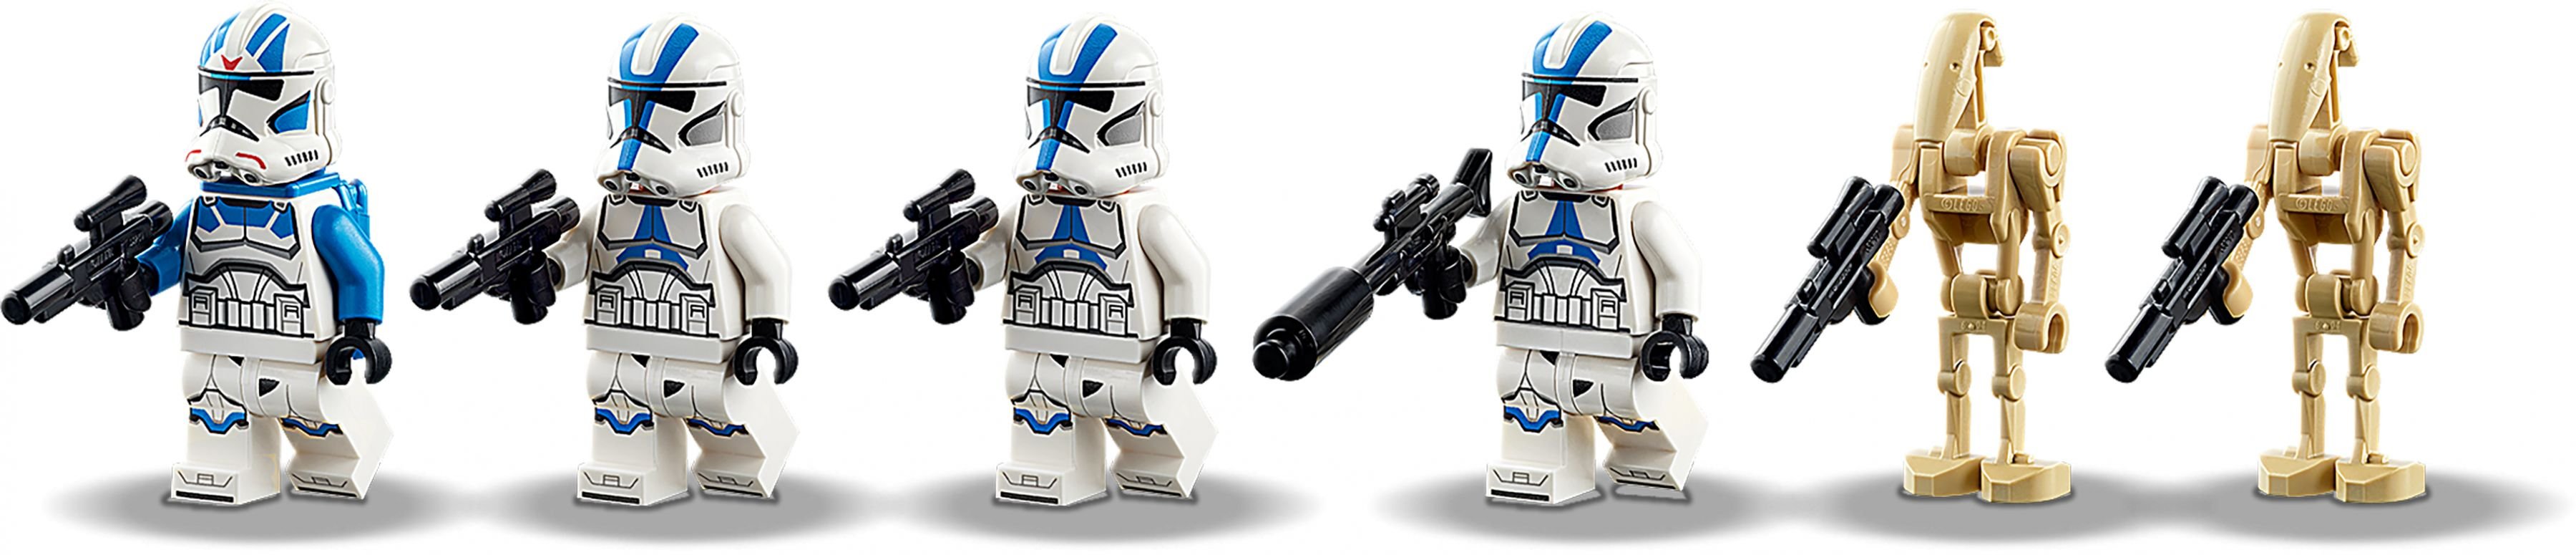 LEGO Star Wars 75280 Clone Troopers™ der 501. Legion LEGO_75280_alt5.jpg